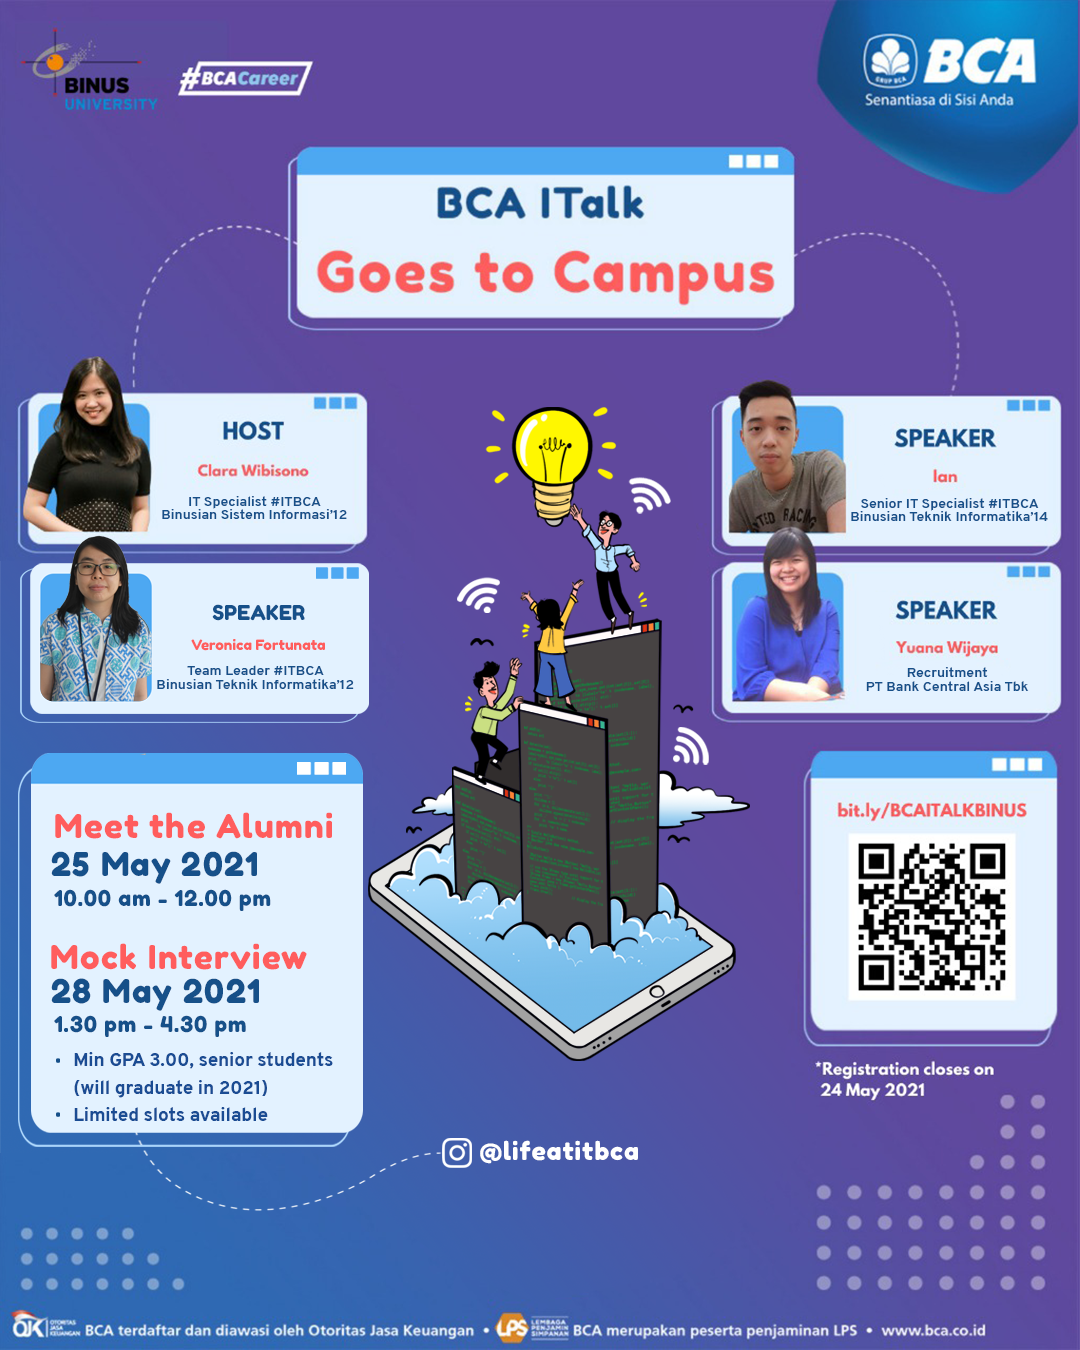 BCA ITalk Goes to Campus